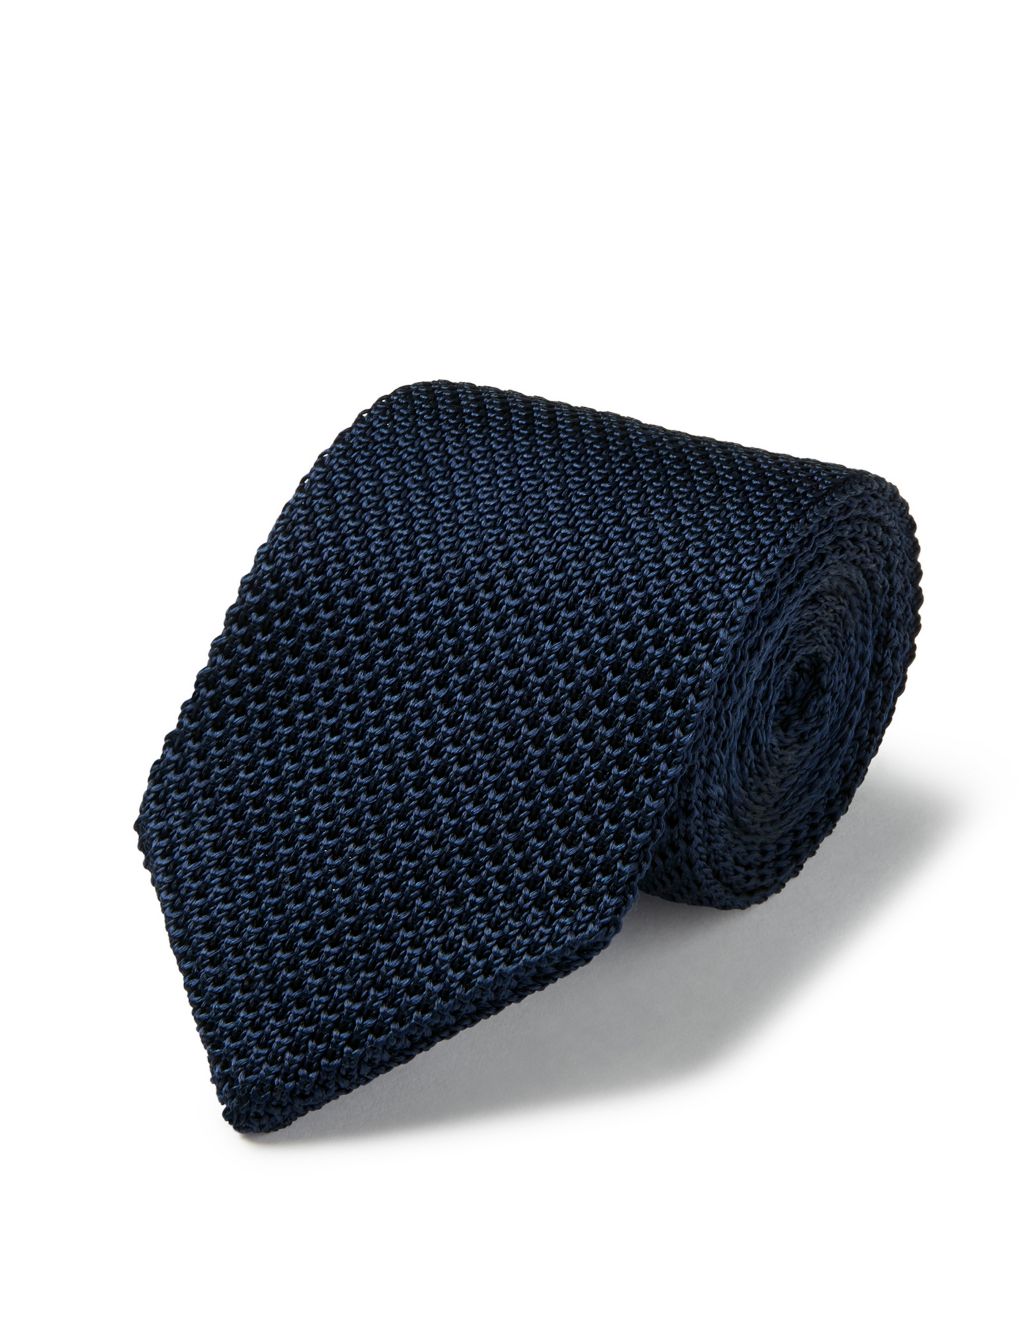 Slim Textured Pure Silk Knitted Tie